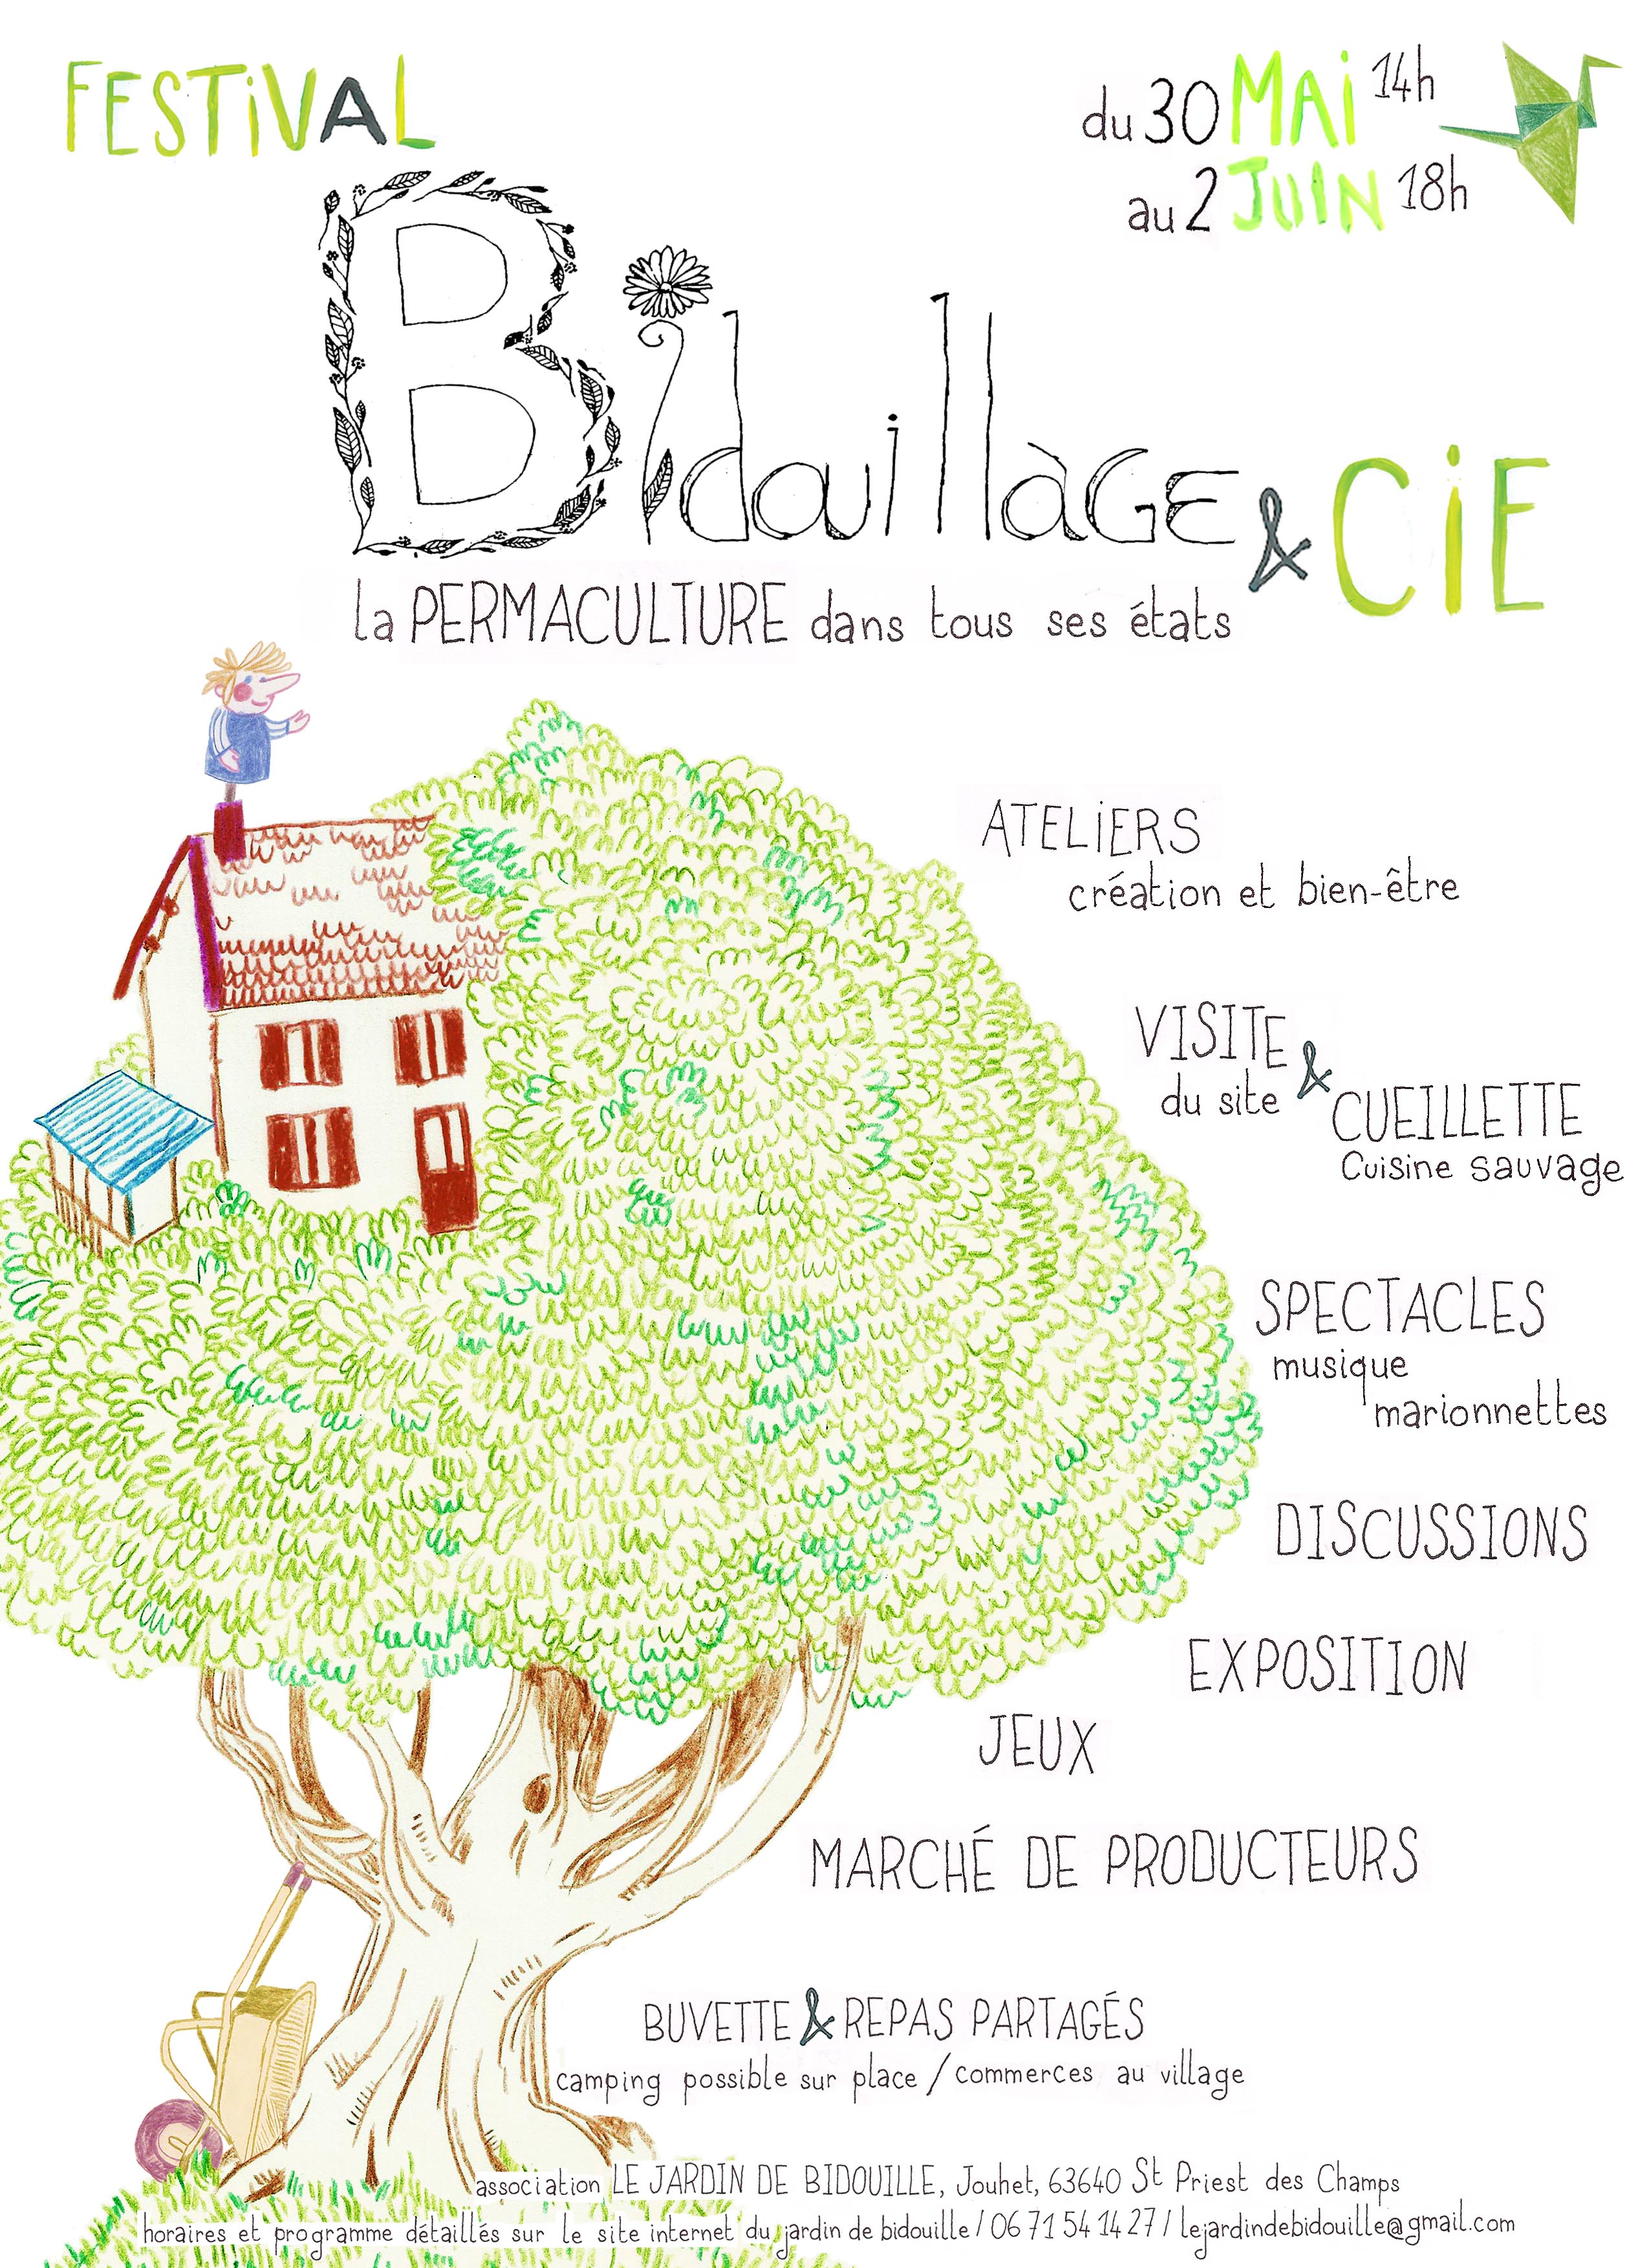 Programme Du Festival Bidouillage Cie Le Jardin De Bidouille